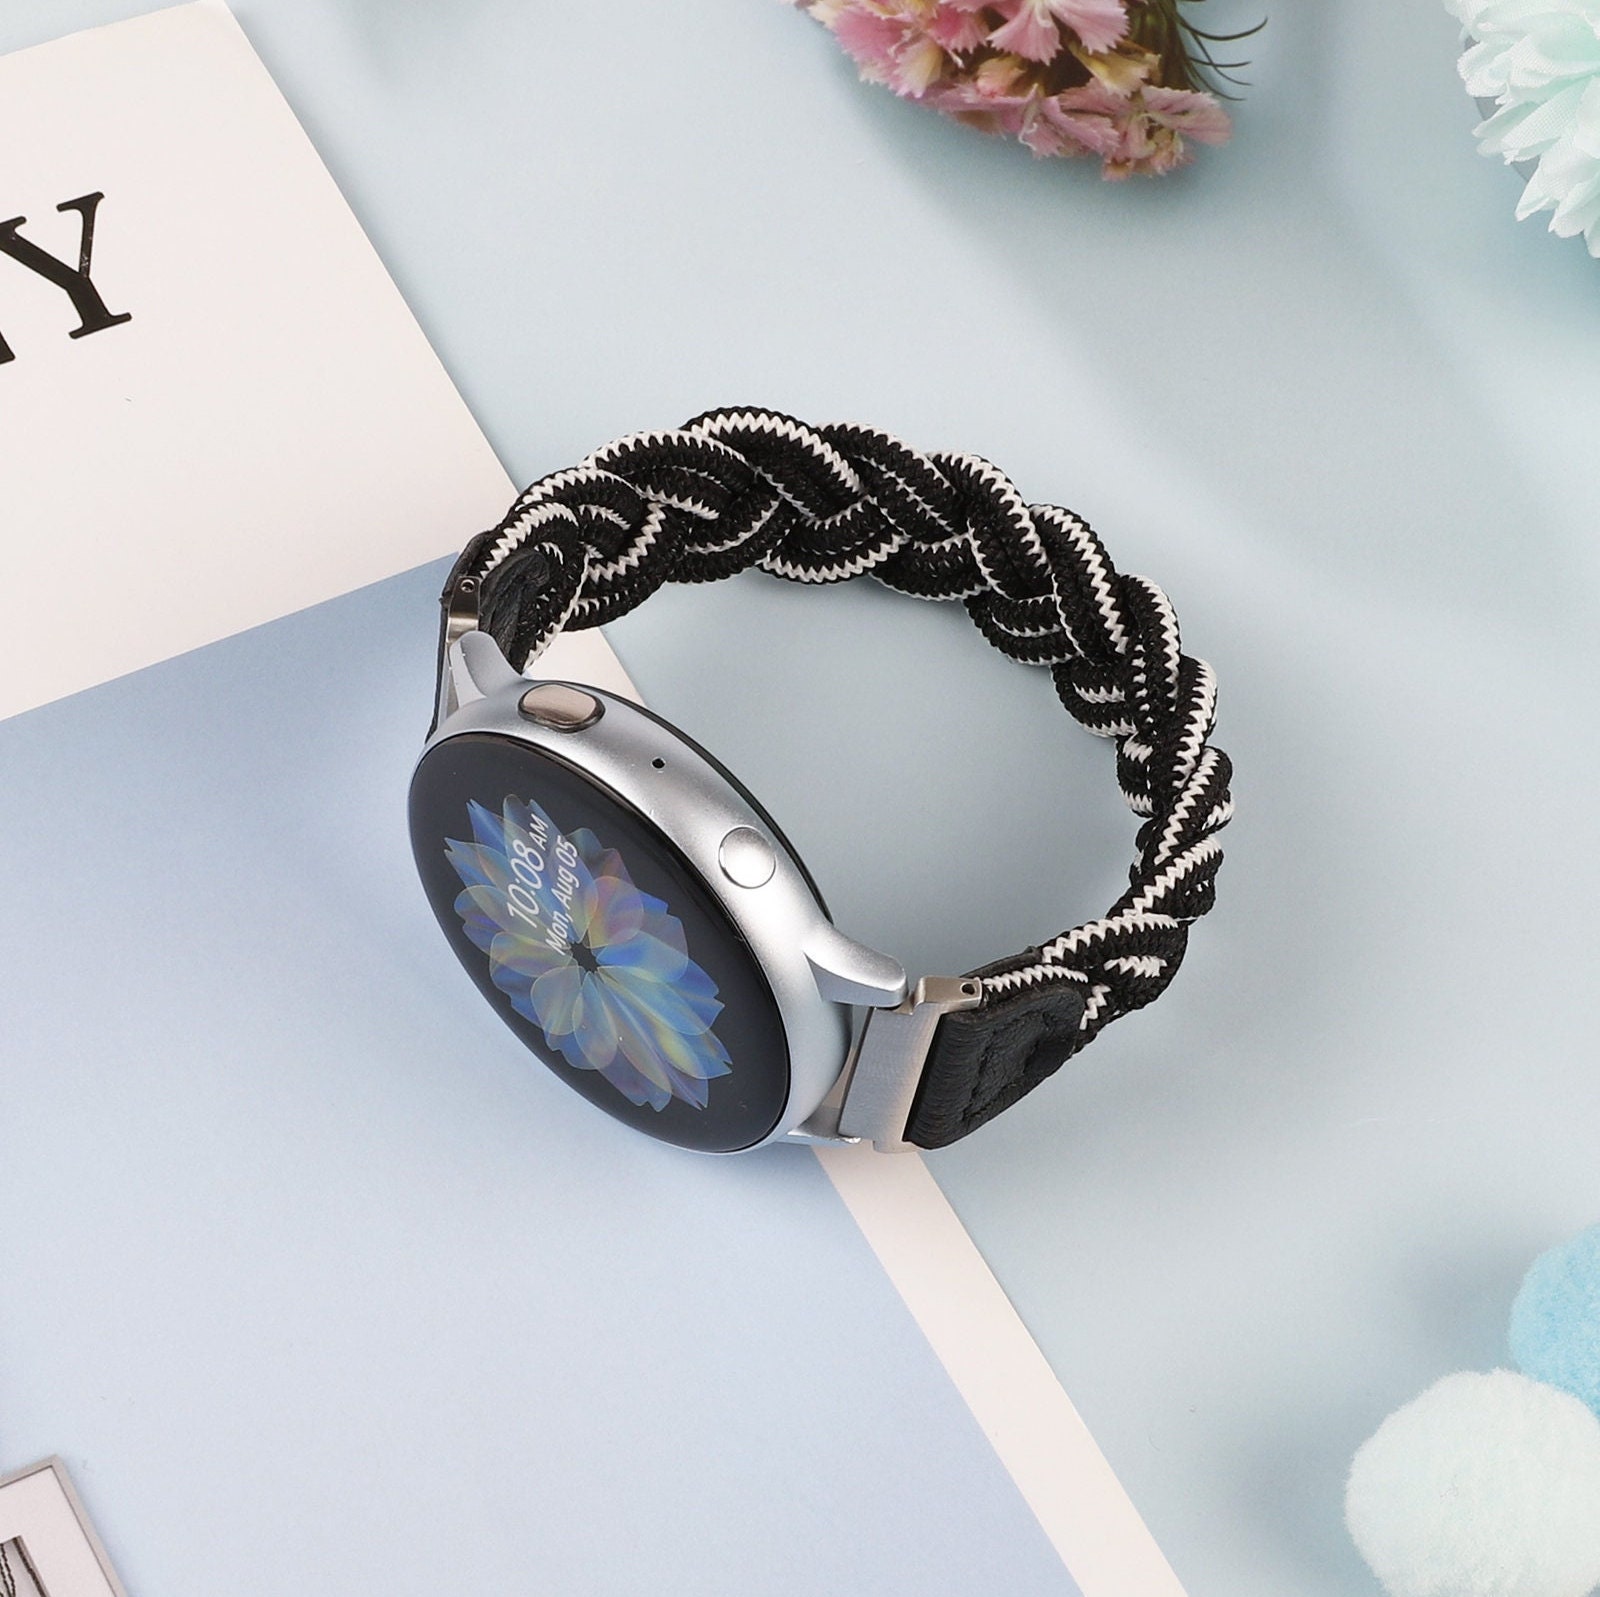 Beige Topographic Samsung Galaxy Watch Band – SALAVISA